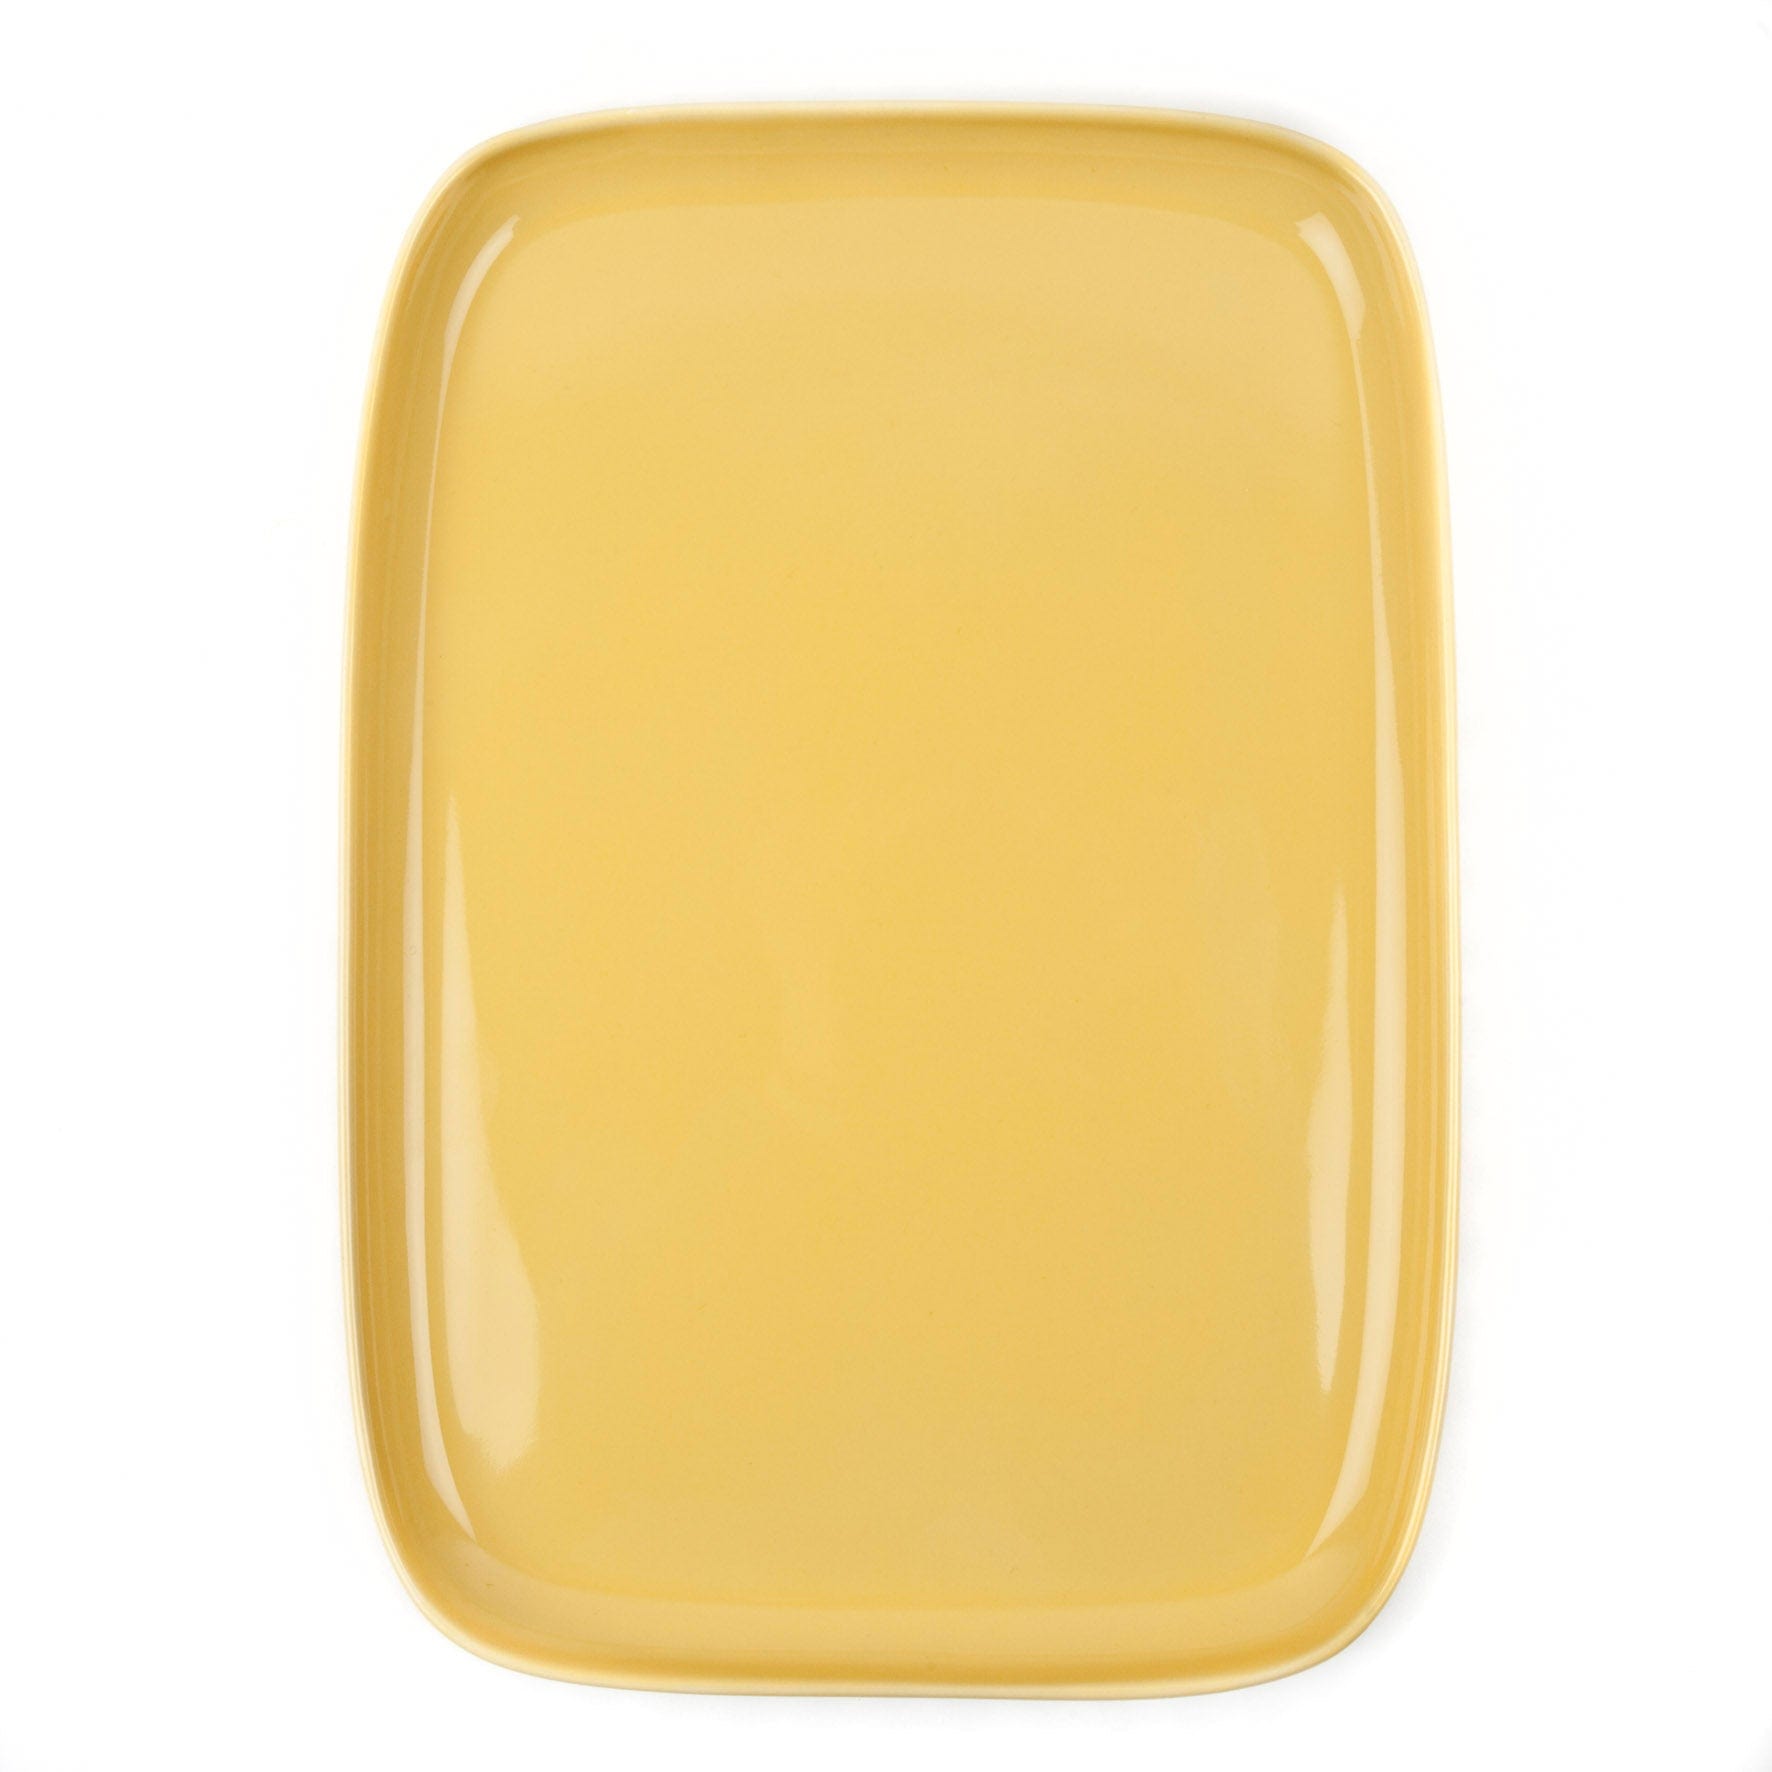 Yellow Large Rectangular Ceramic Platter